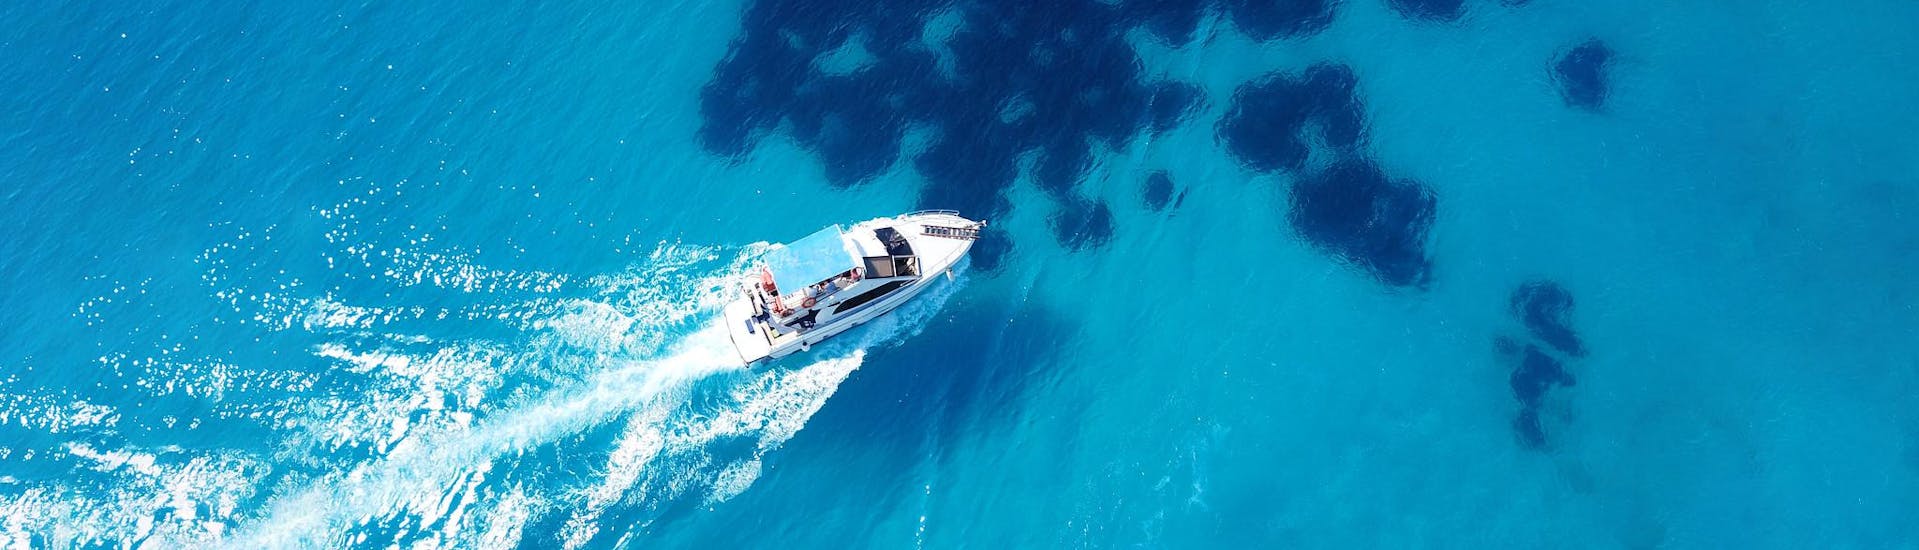 Mensen genieten van helder water op open zee tijdens een bootverhuur met schipper